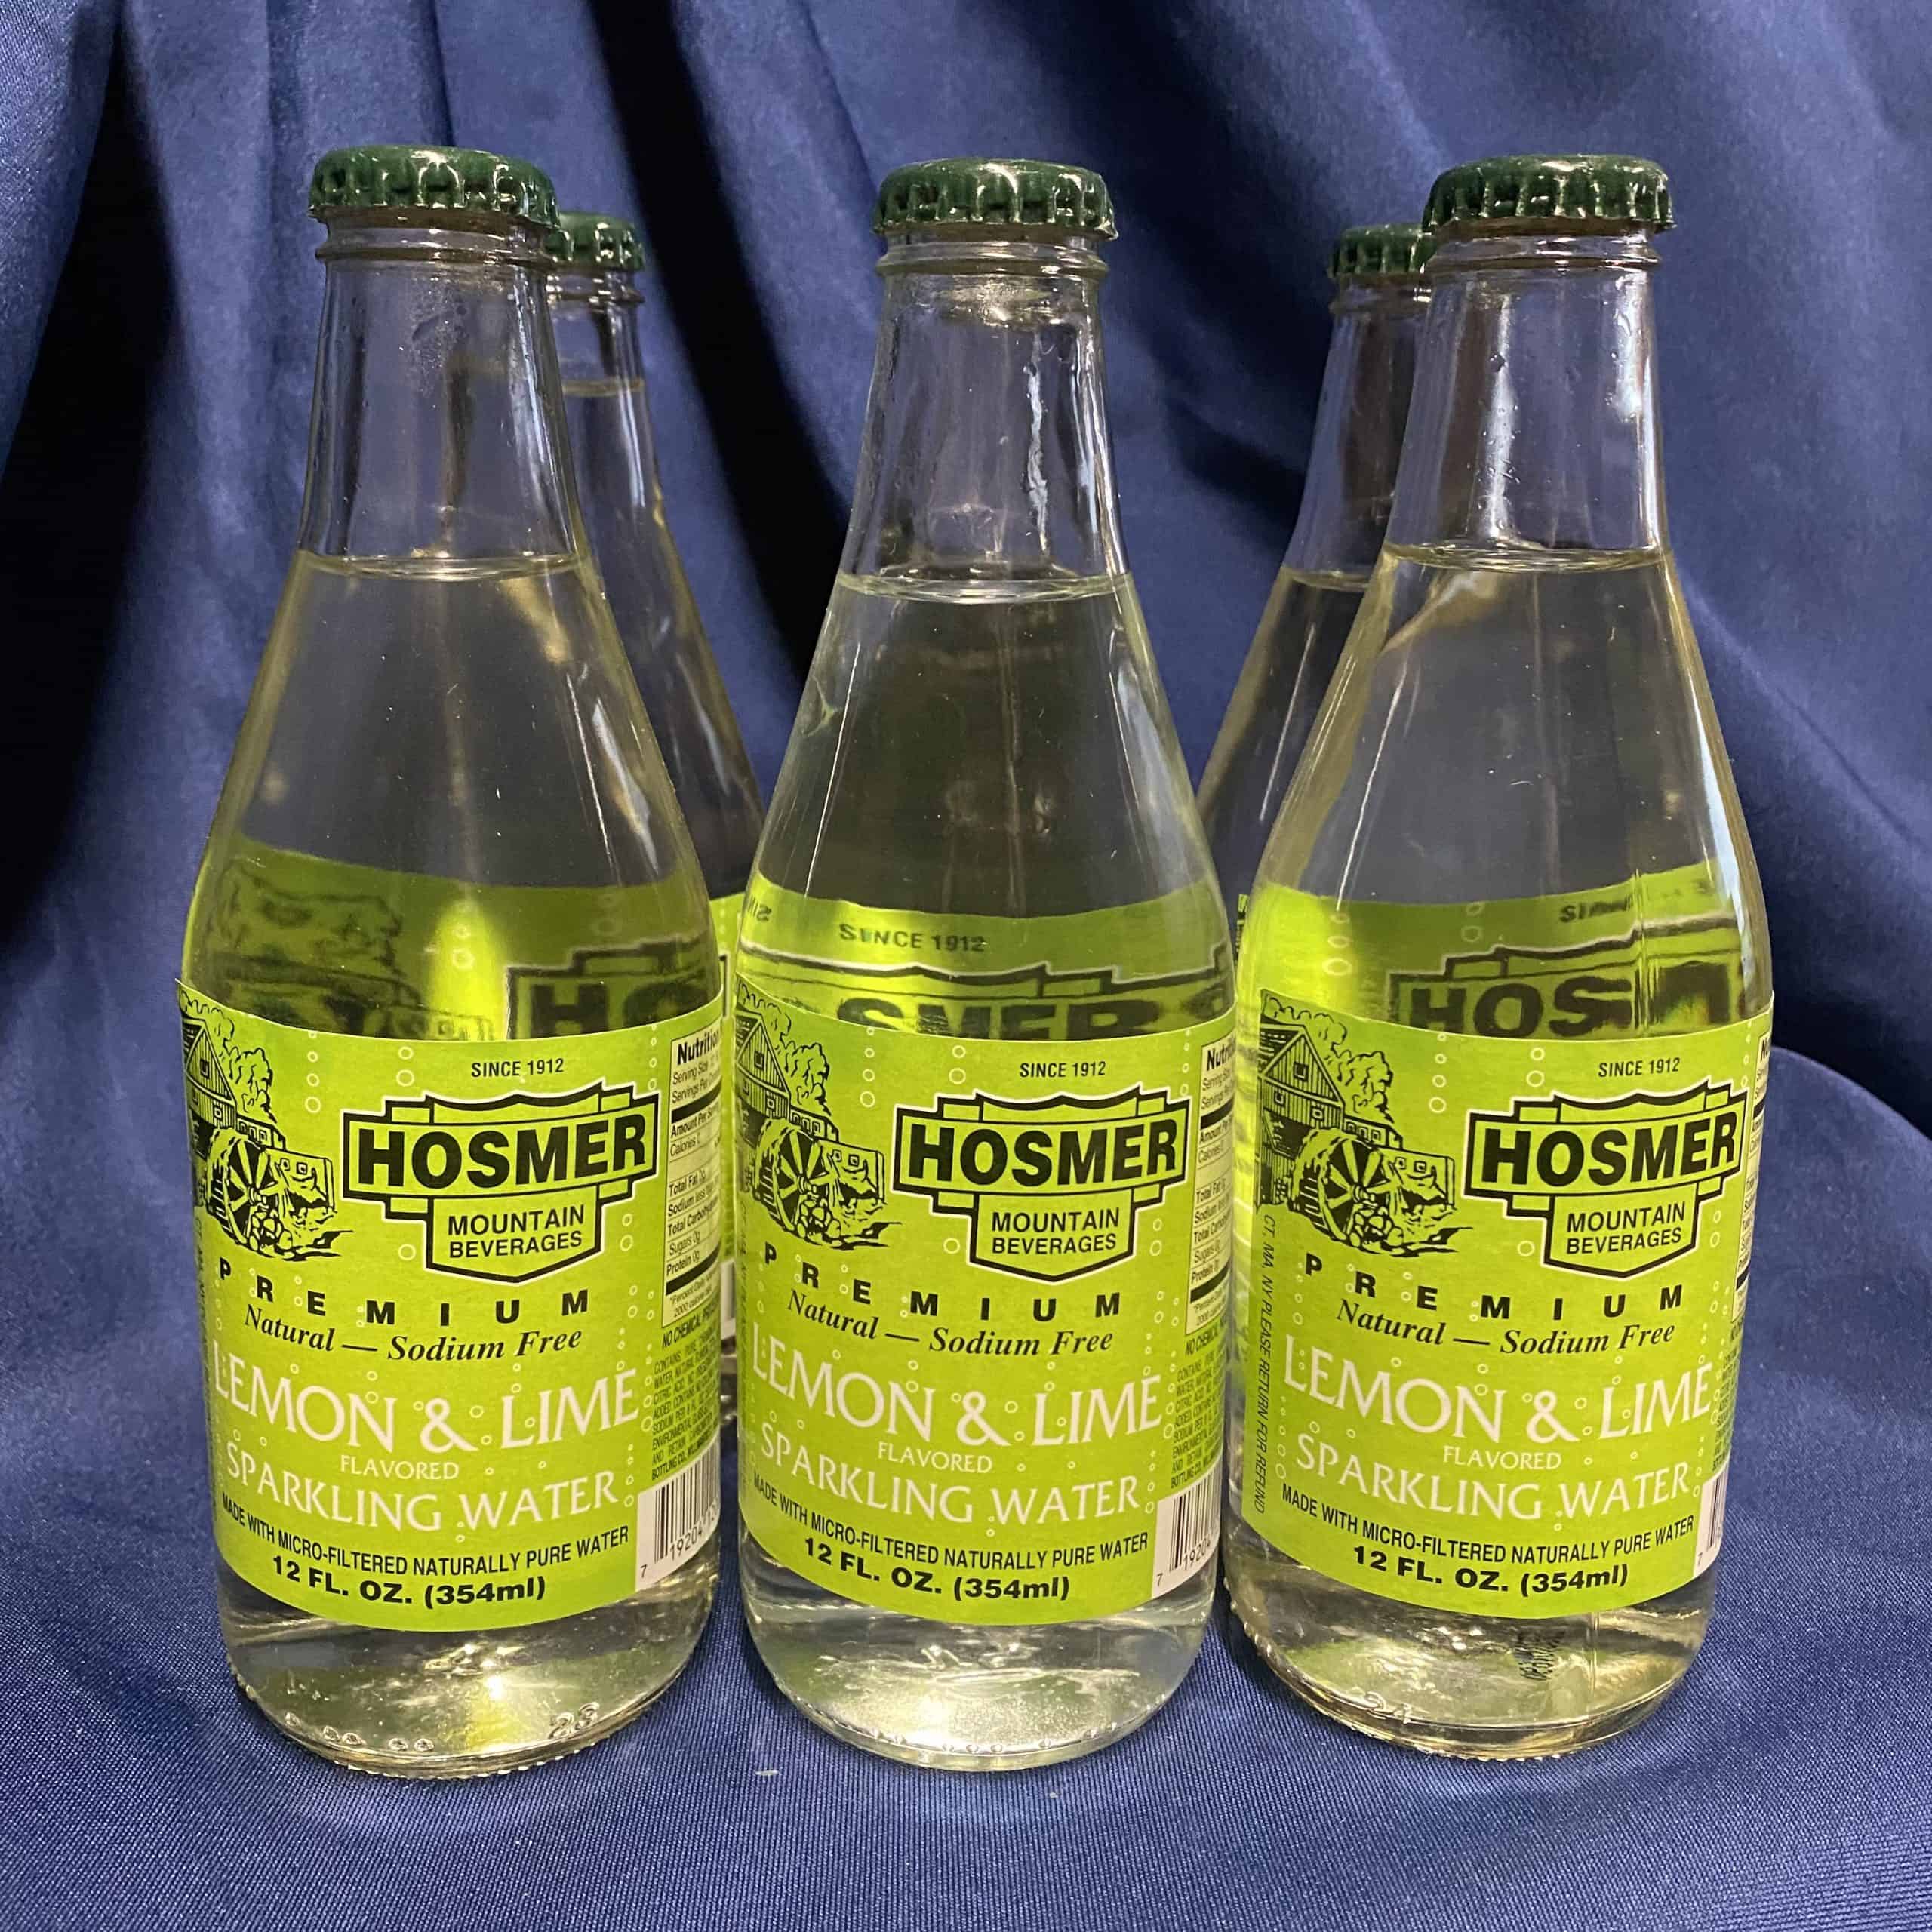 Hosmer Lemon & Lime Sparkling Water